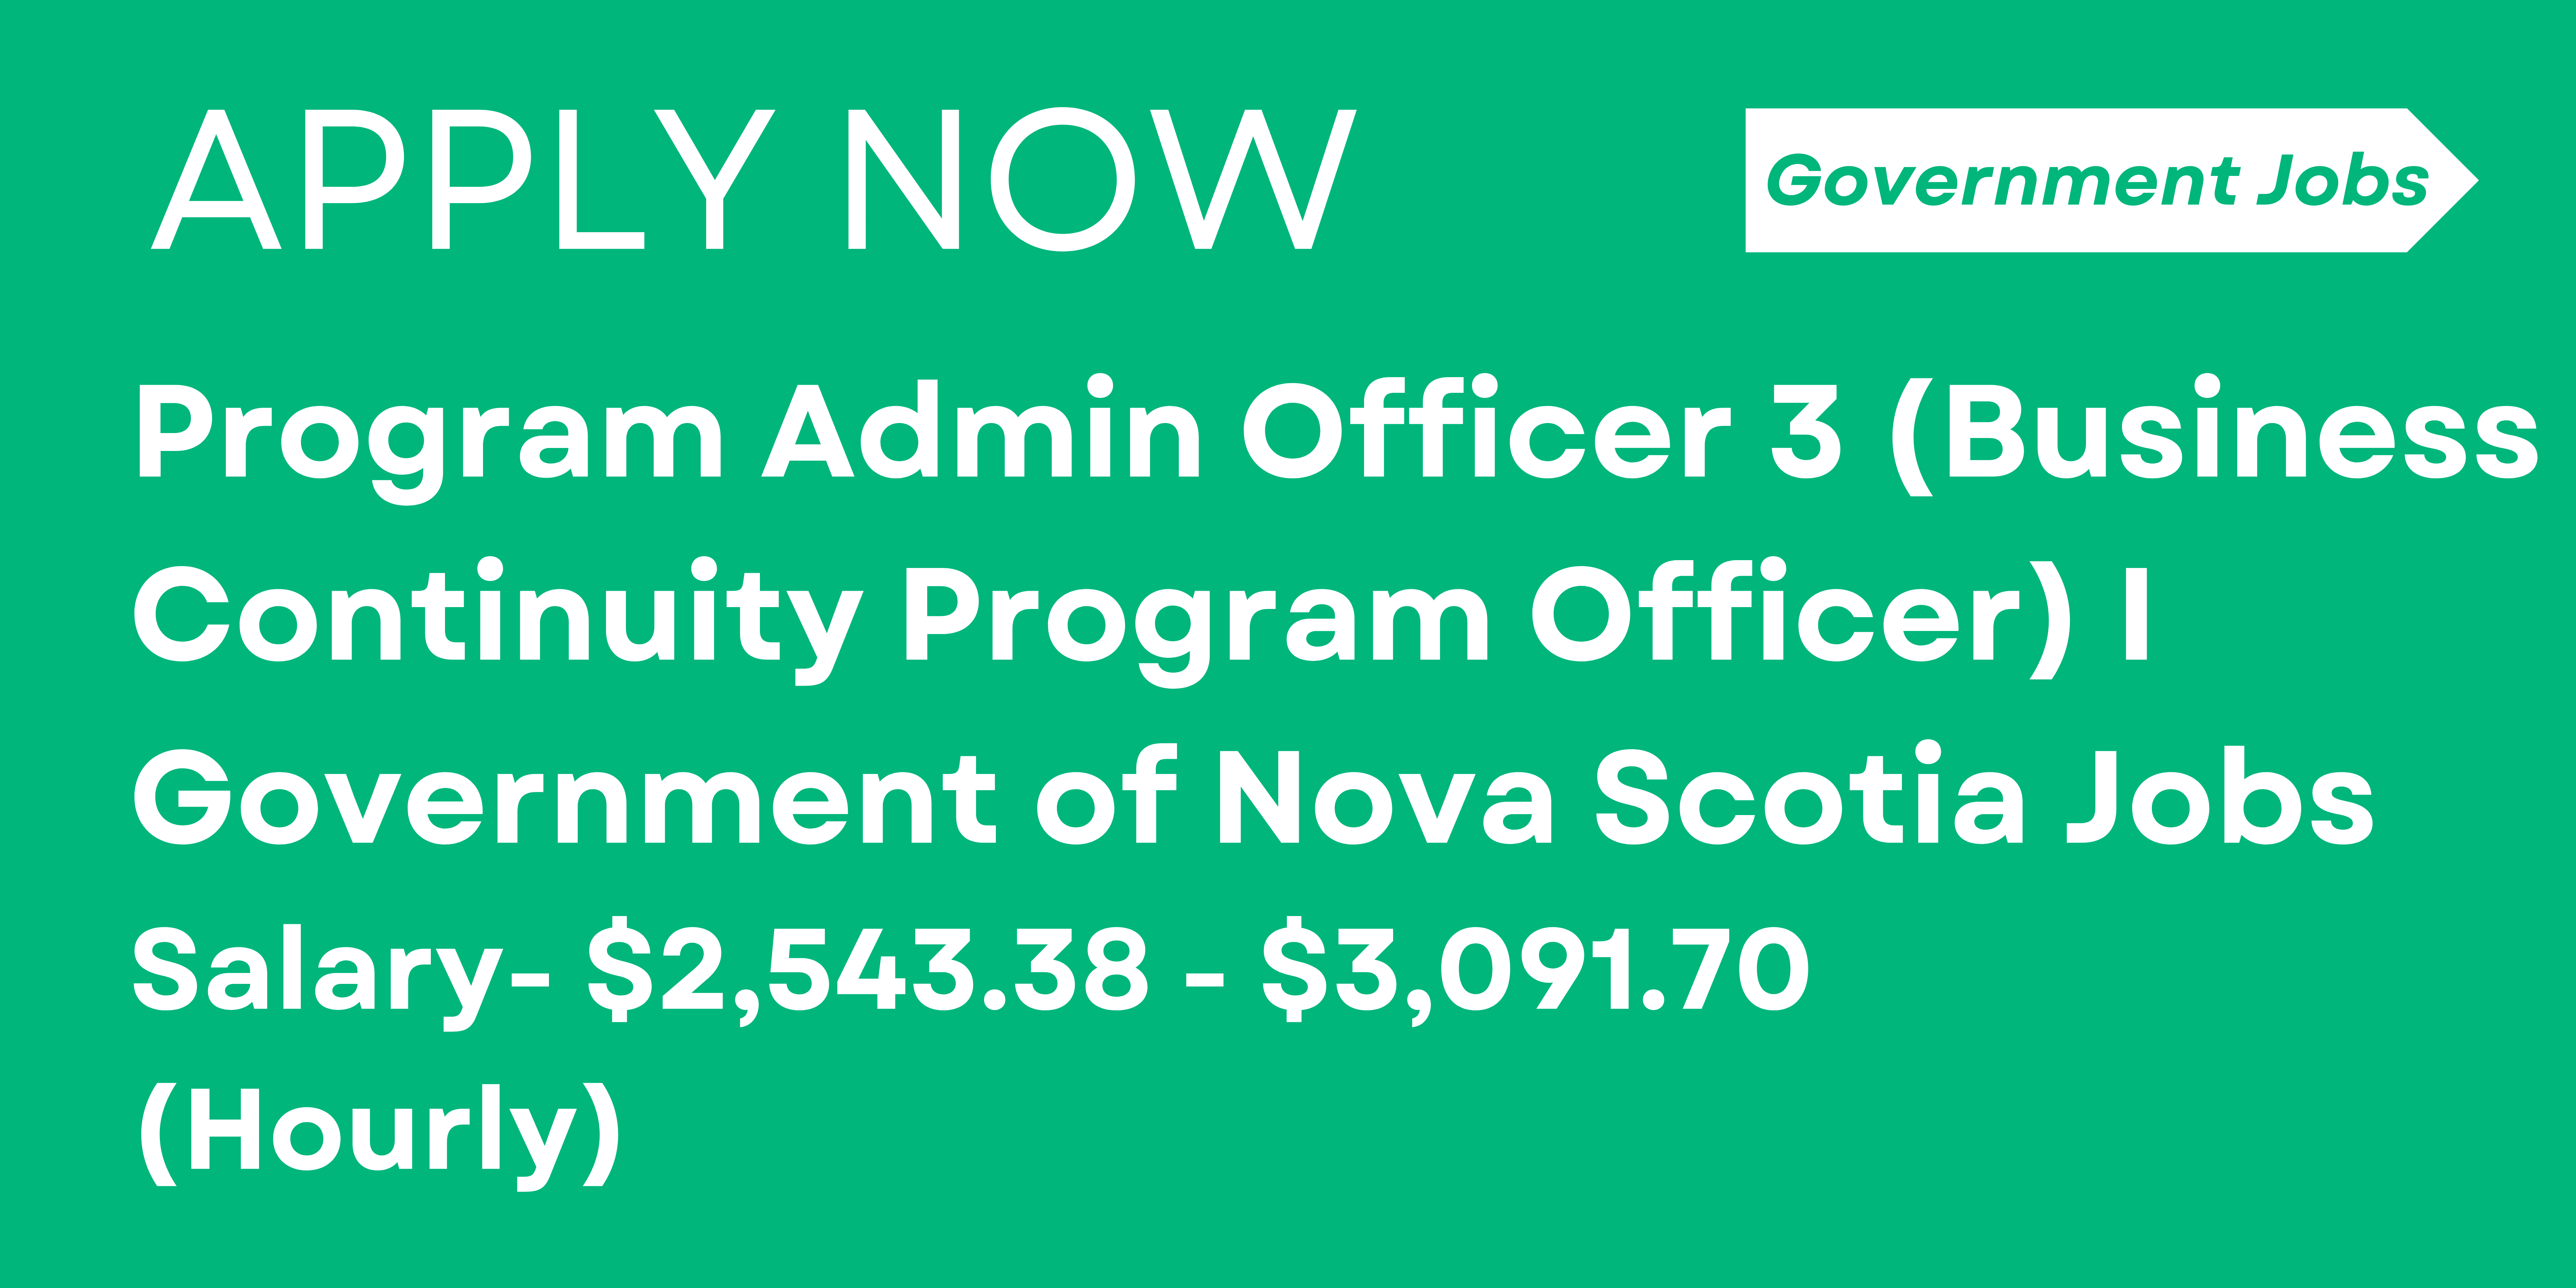 Program Admin Officer 3 (Business Continuity Program Officer) I Government of Nova Scotia Jobs